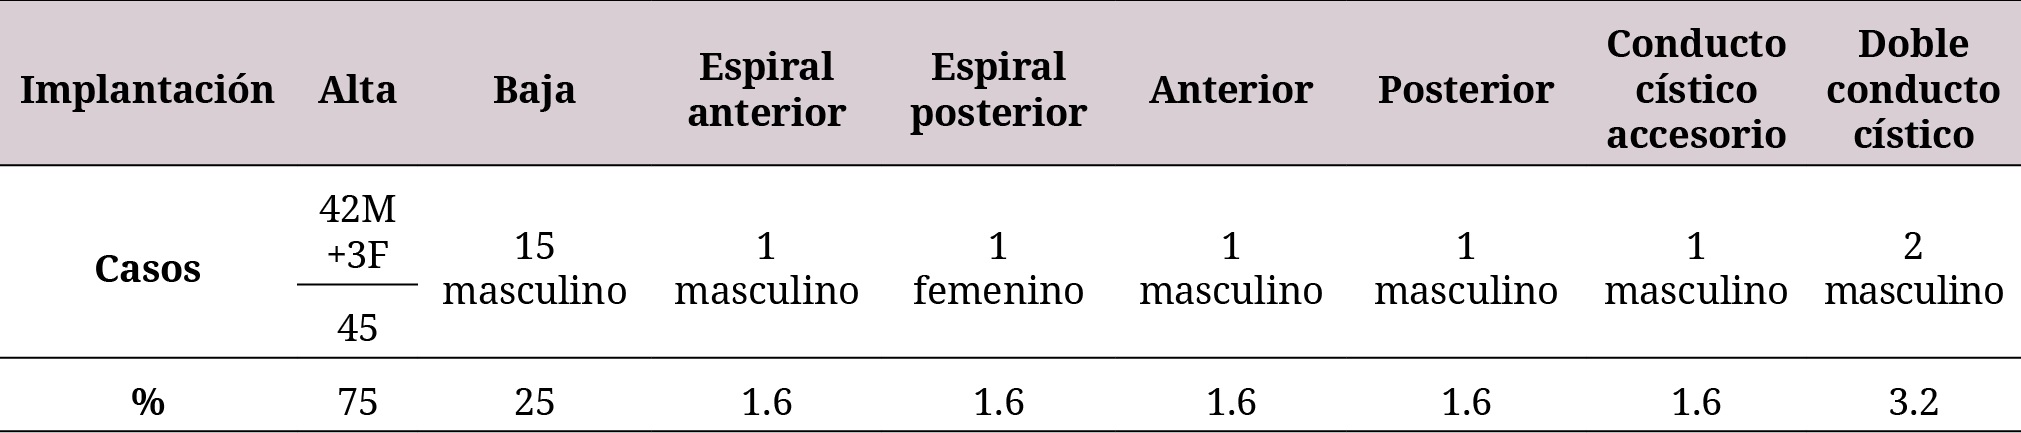 Frecuencia de variaciones del conducto cístico según Taybi en una muestra de especímenes cadavéricos en Colombia